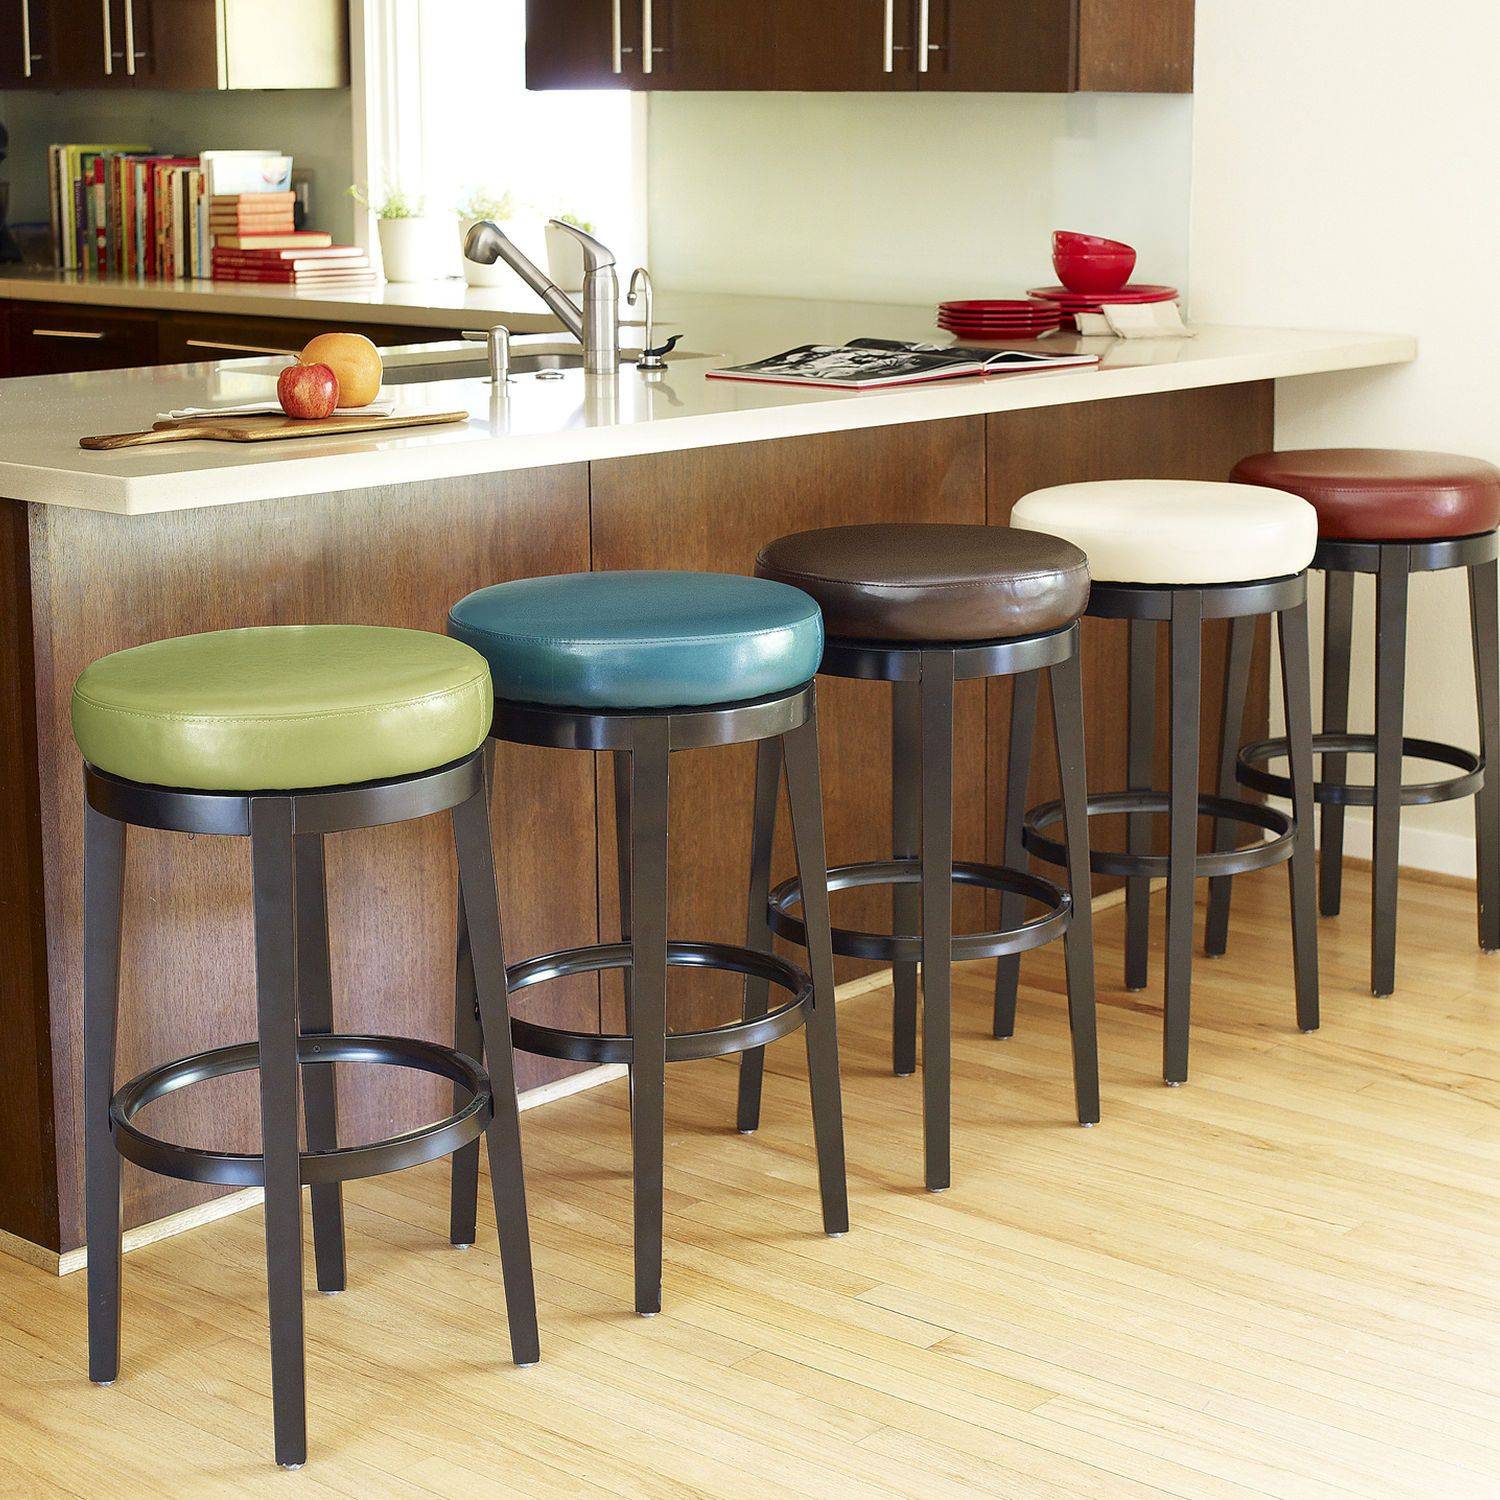 Барные стулья для кухни: подробный гид по выбору и 50+ фото примеров